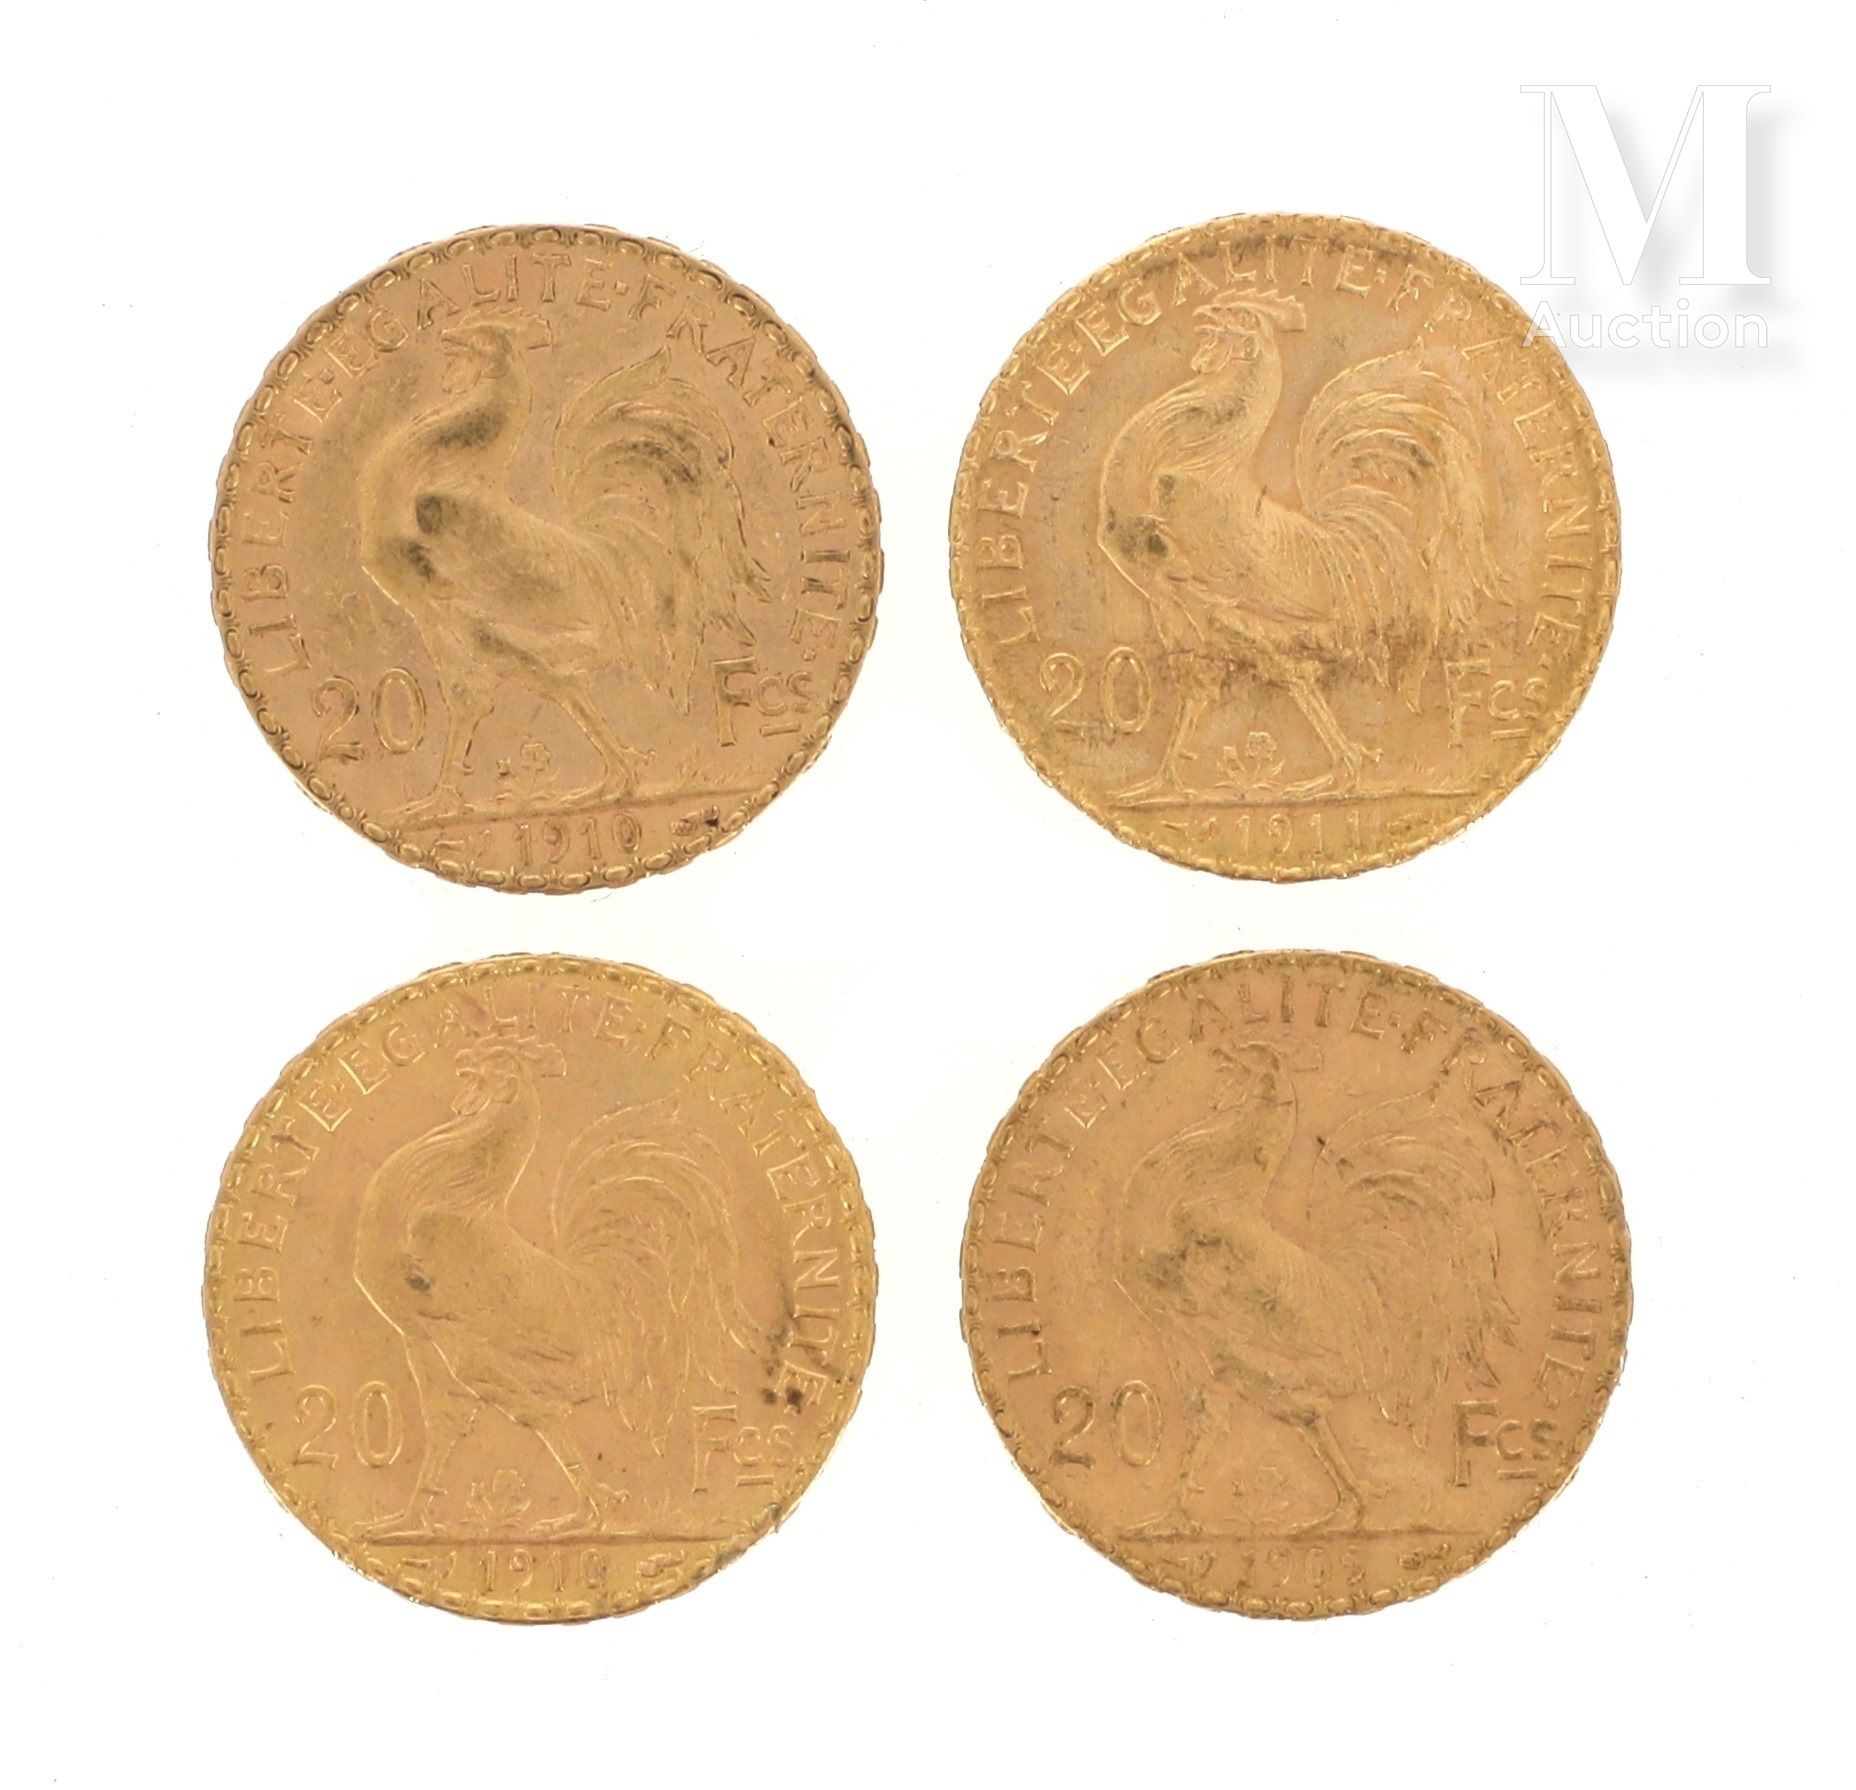 Quatre pièces 20 FF or Quatre pièces en or de 20 FF Coq

1909, 2 x 1910, 1911